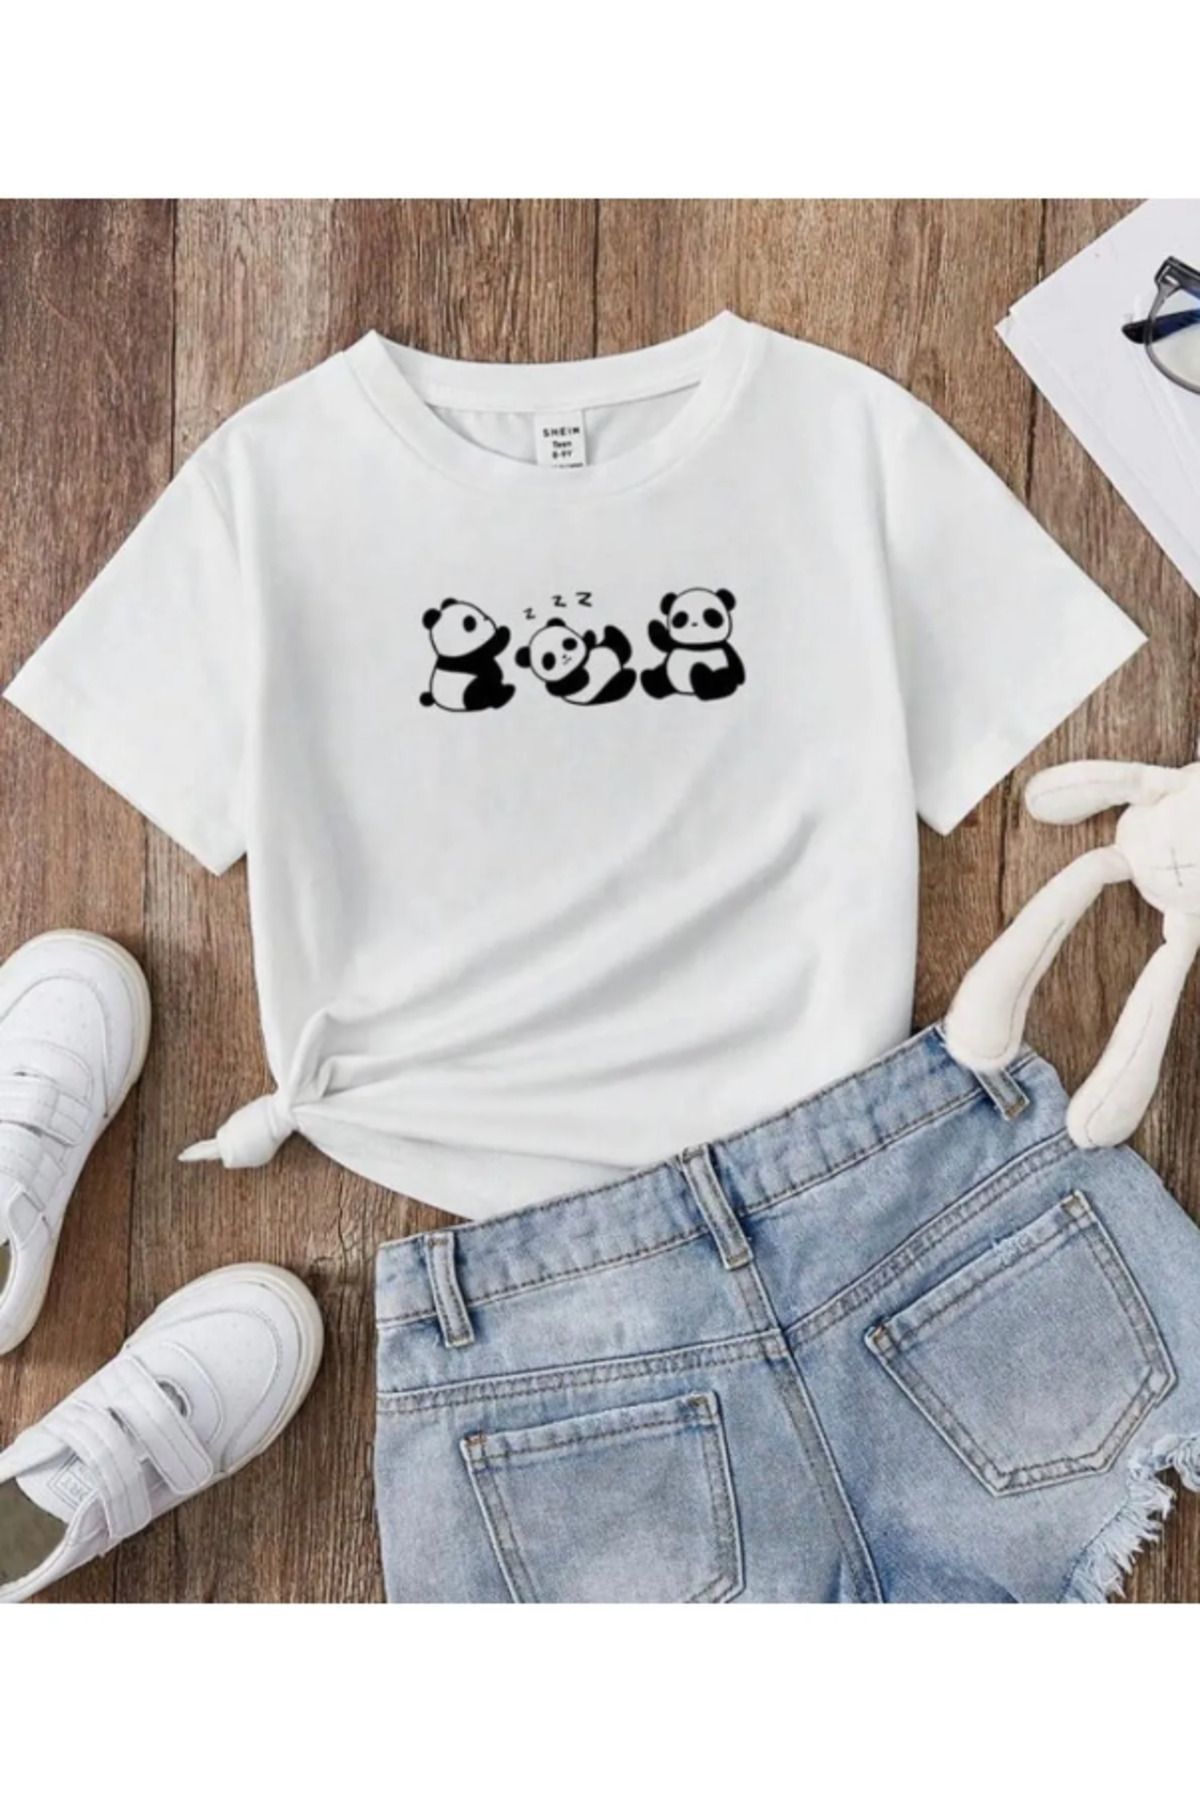 Pelna Çocuk Trend Model Beyaz Beyaz T Shirt Küçük Panda Baskılı Pamuklu